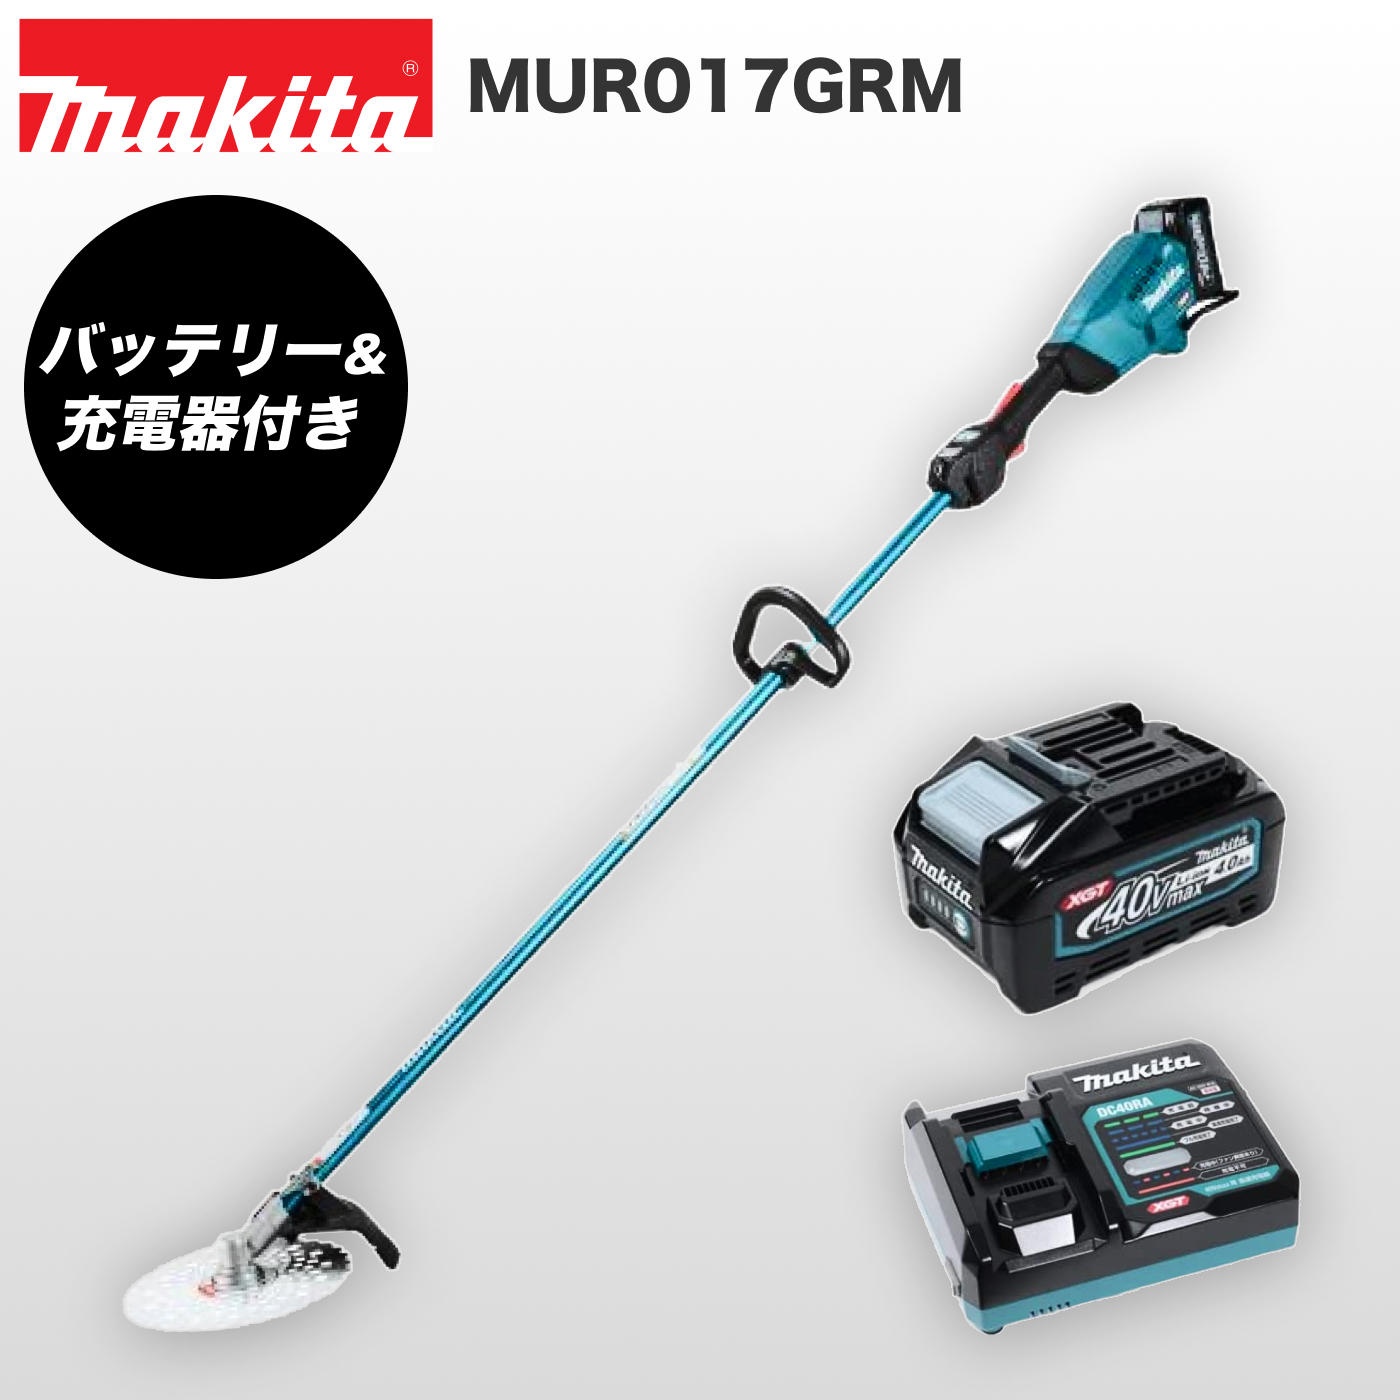 【楽天市場】【新商品】マキタ 充電式草刈機 軽量 MUR017GRM